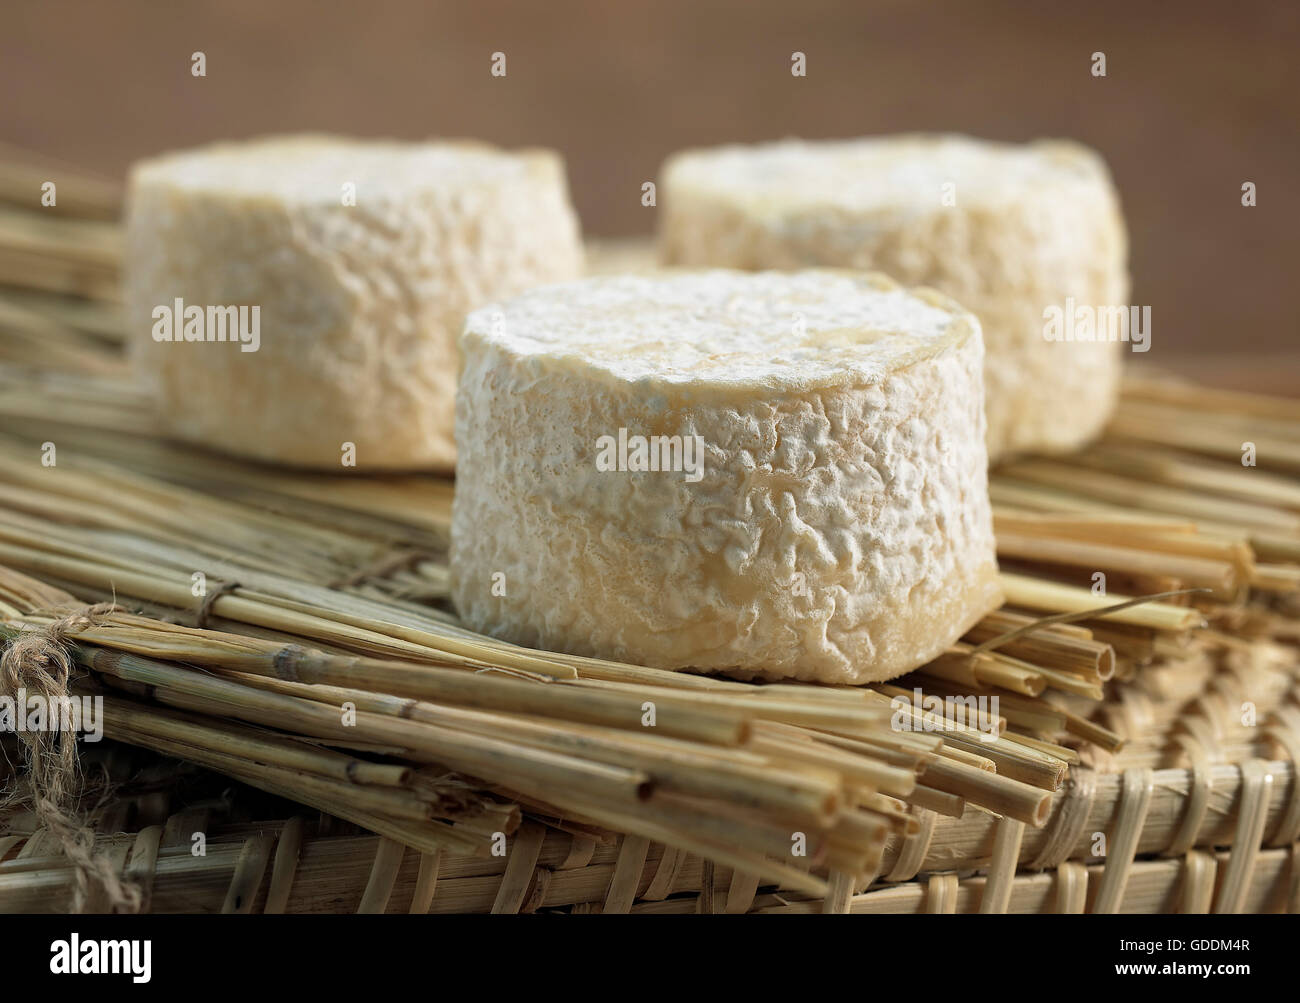 Französische Käse namens Crottin mit Ziegenmilch Käse gemacht Stockfoto